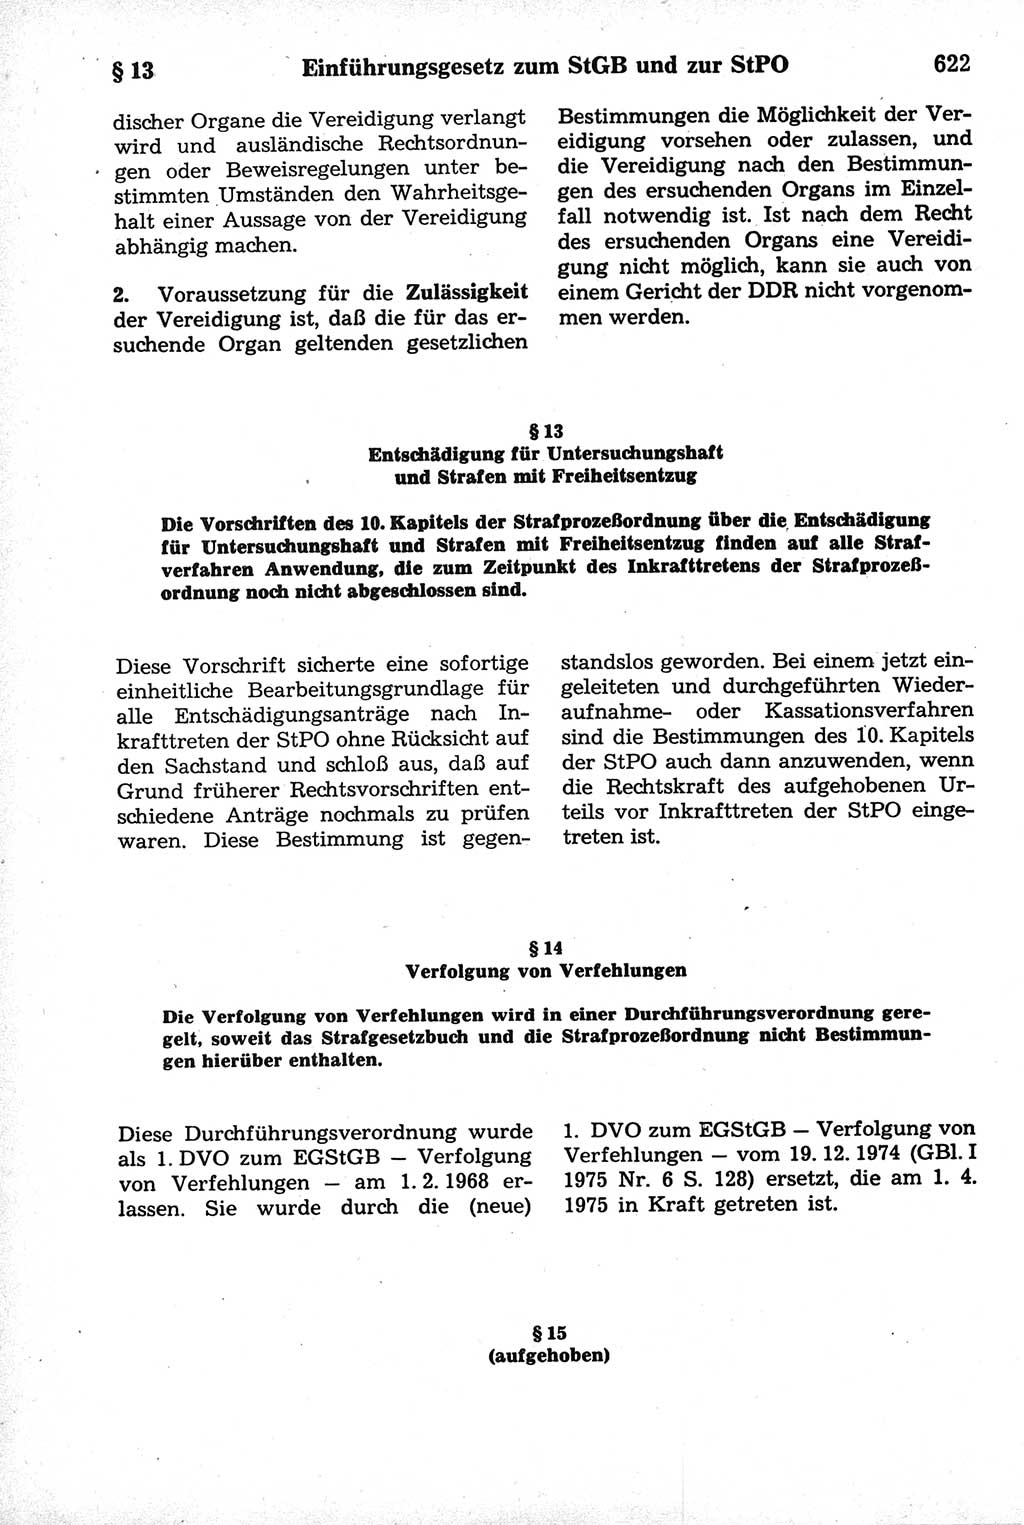 Strafrecht der Deutschen Demokratischen Republik (DDR), Kommentar zum Strafgesetzbuch (StGB) 1981, Seite 622 (Strafr. DDR Komm. StGB 1981, S. 622)